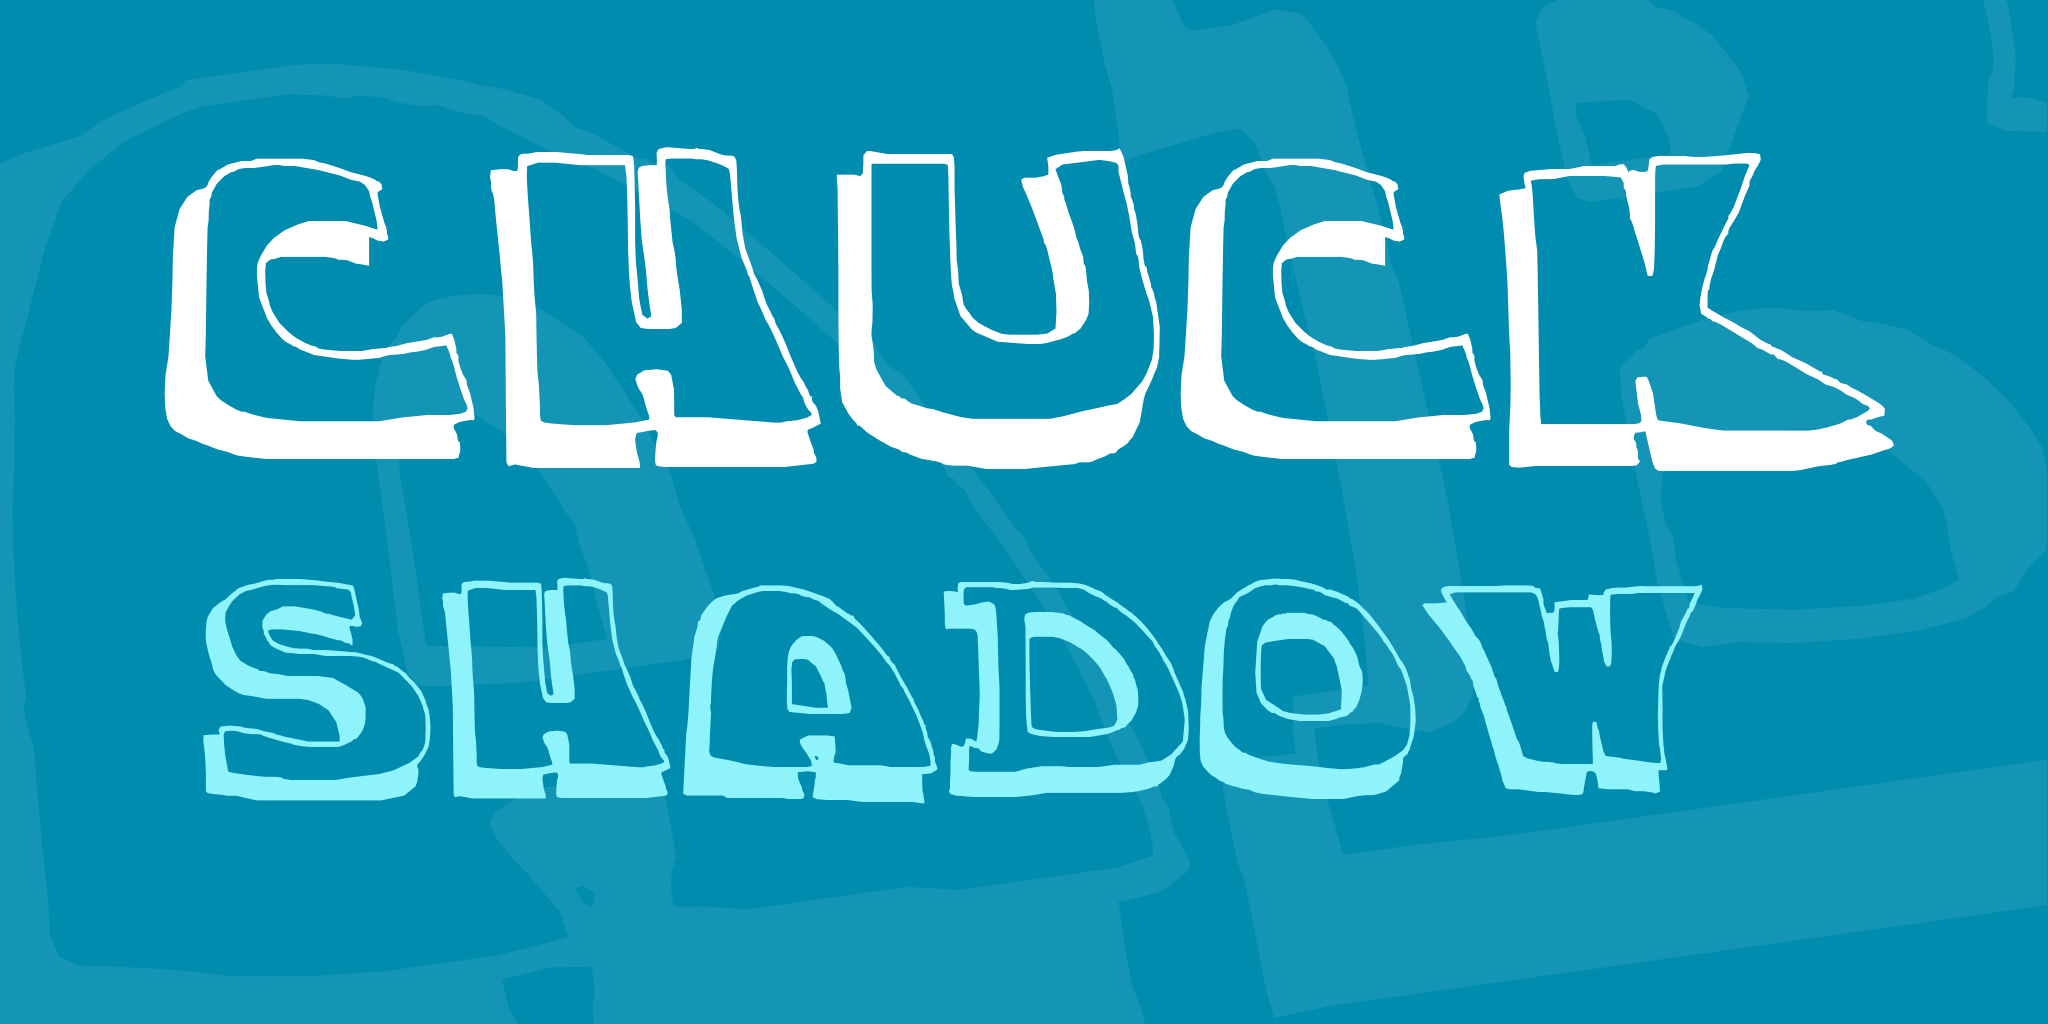 Chuck Shadow